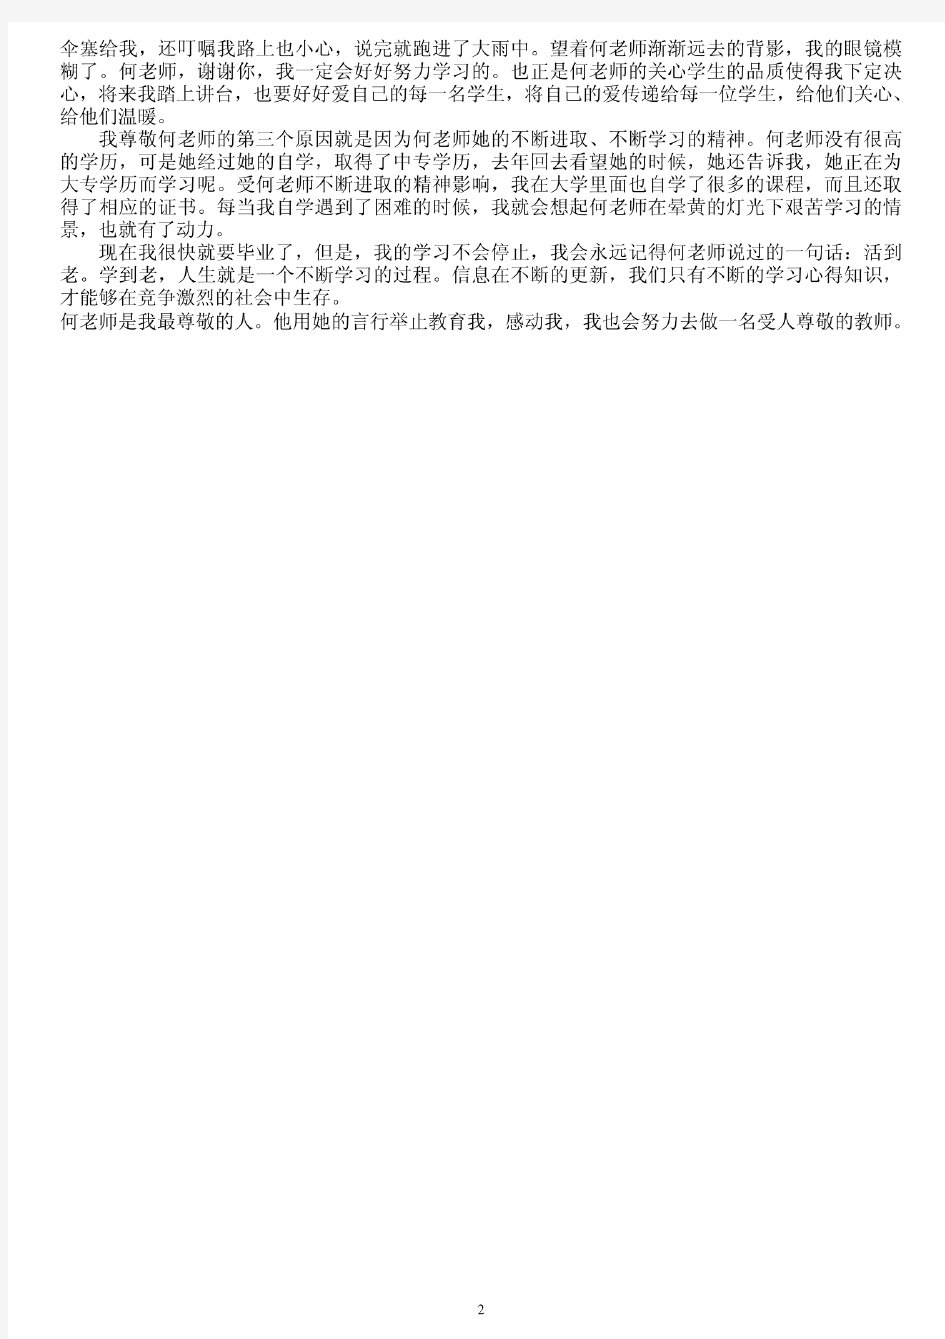 2019国家普通话水平测试题 题库50套全套12带拼音 完整版  .pdf